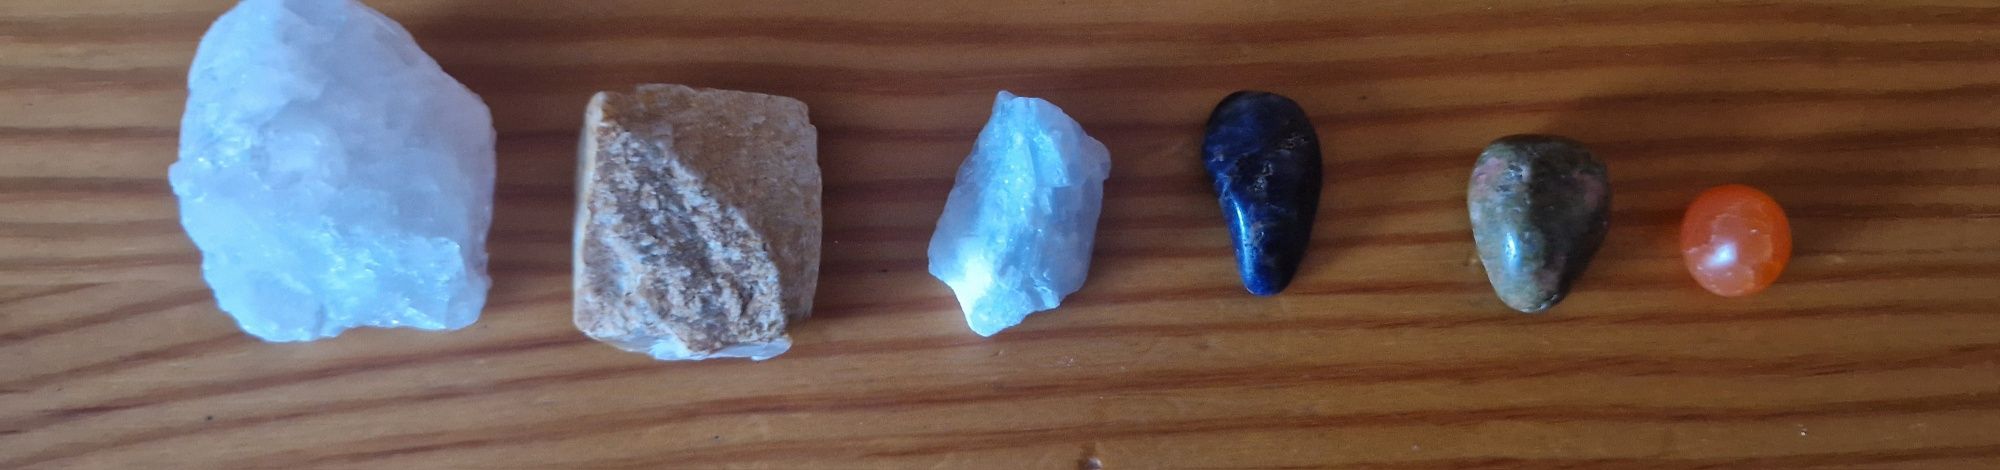 Minerały kwarc różowy i niebieski, kamień księżycowy, sodalit, japis u